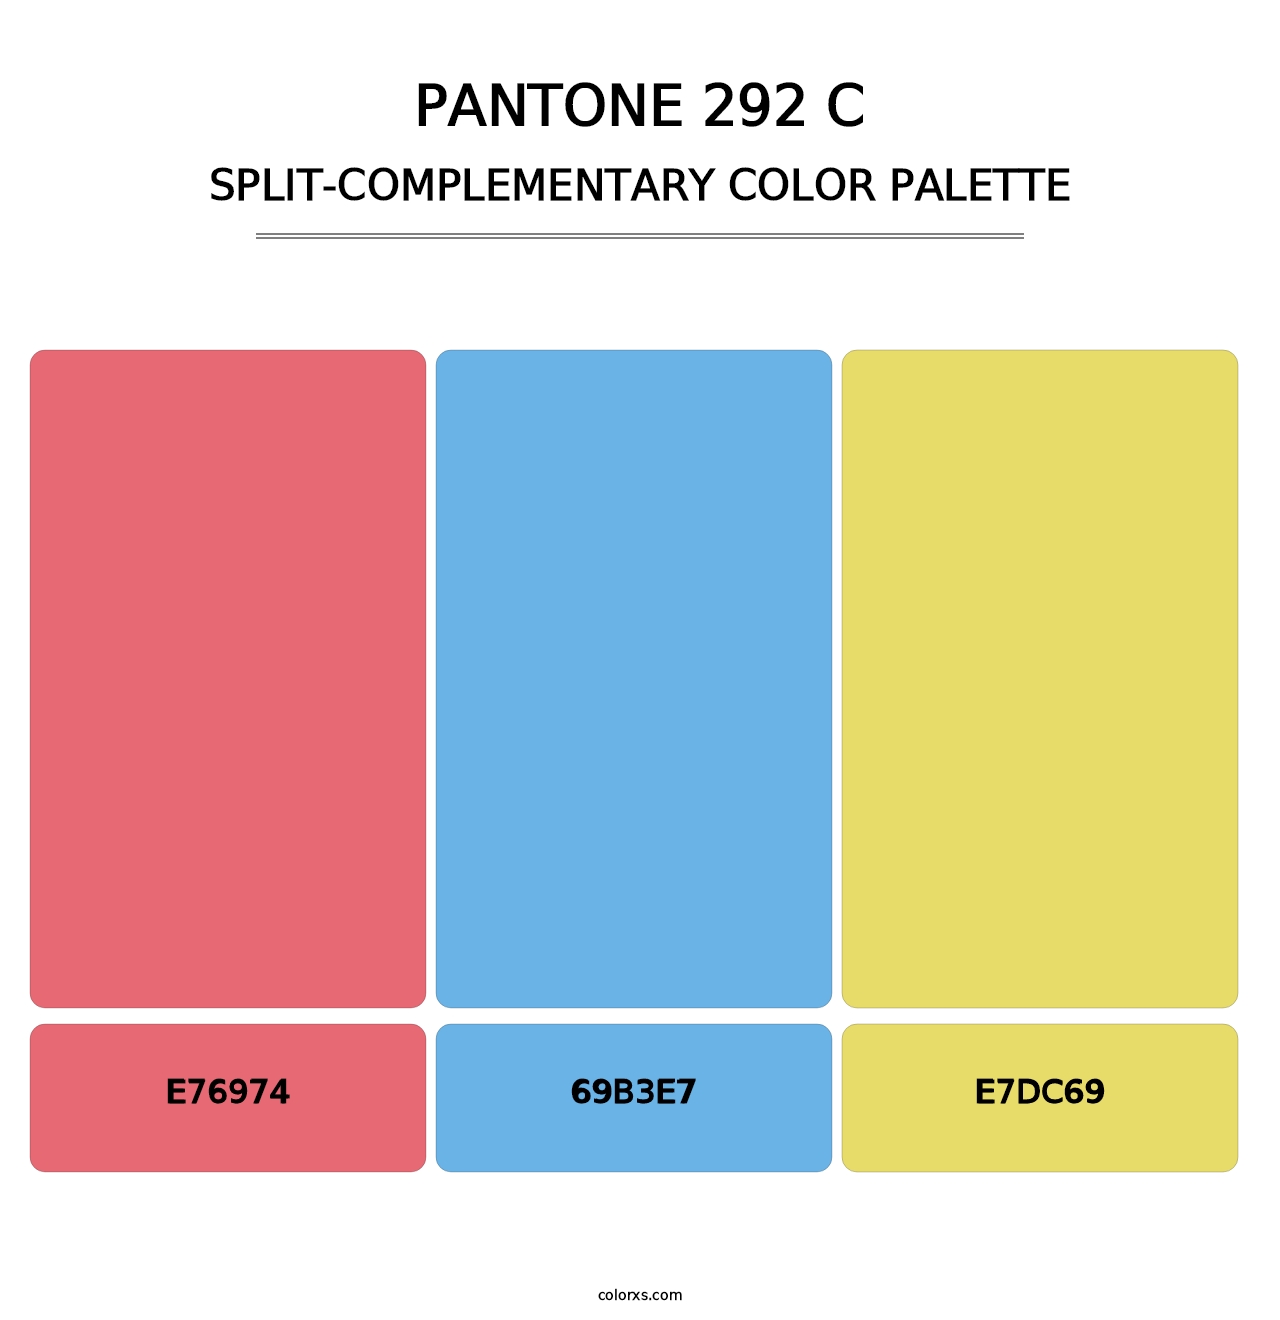 PANTONE 292 C - Split-Complementary Color Palette